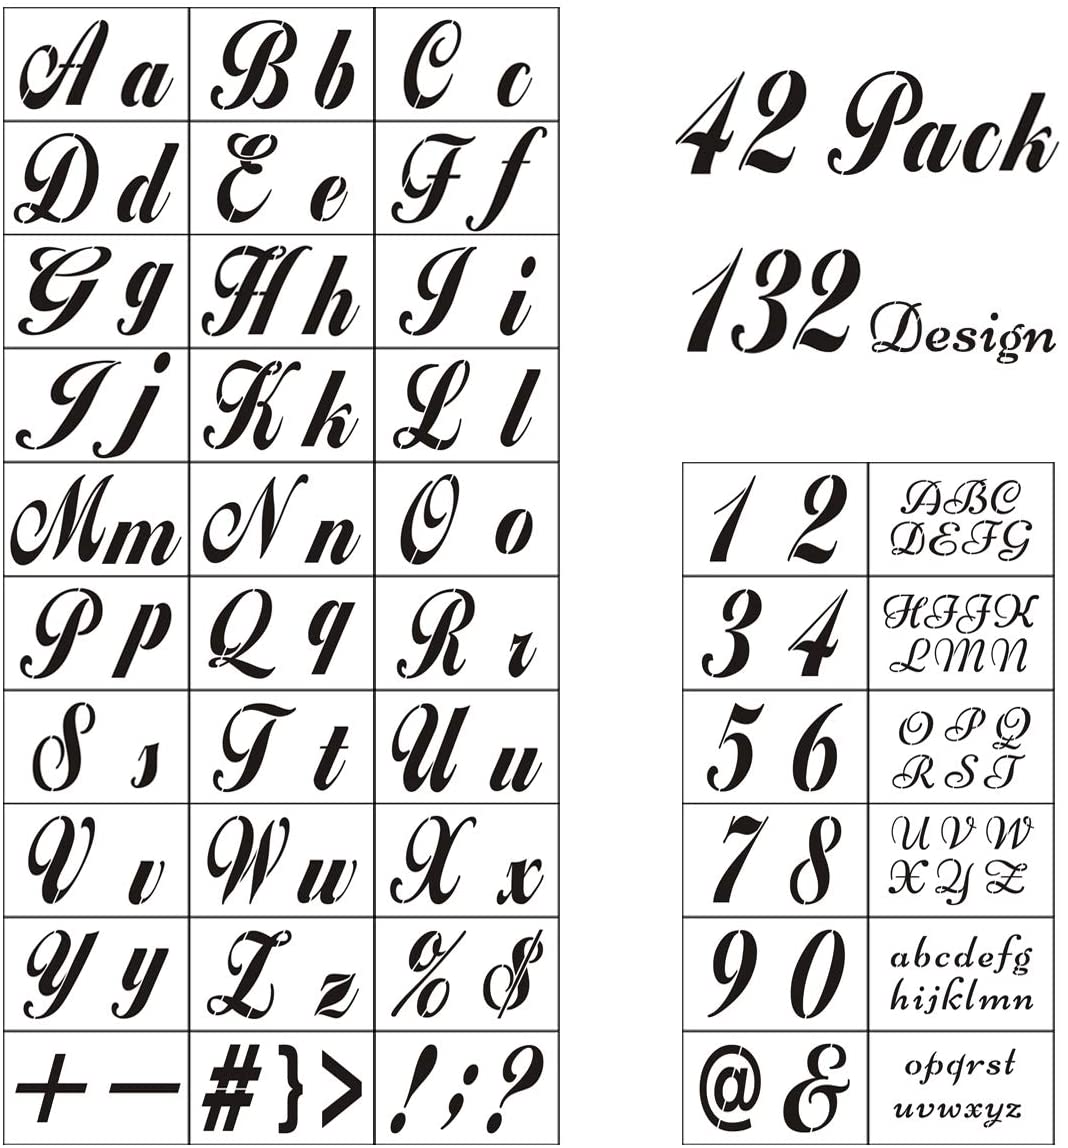 Plantillas de letras para pintar sobre madera – Paquete de 42 plantillas de  alfabeto con números y letreros, plantillas de plástico reutilizables